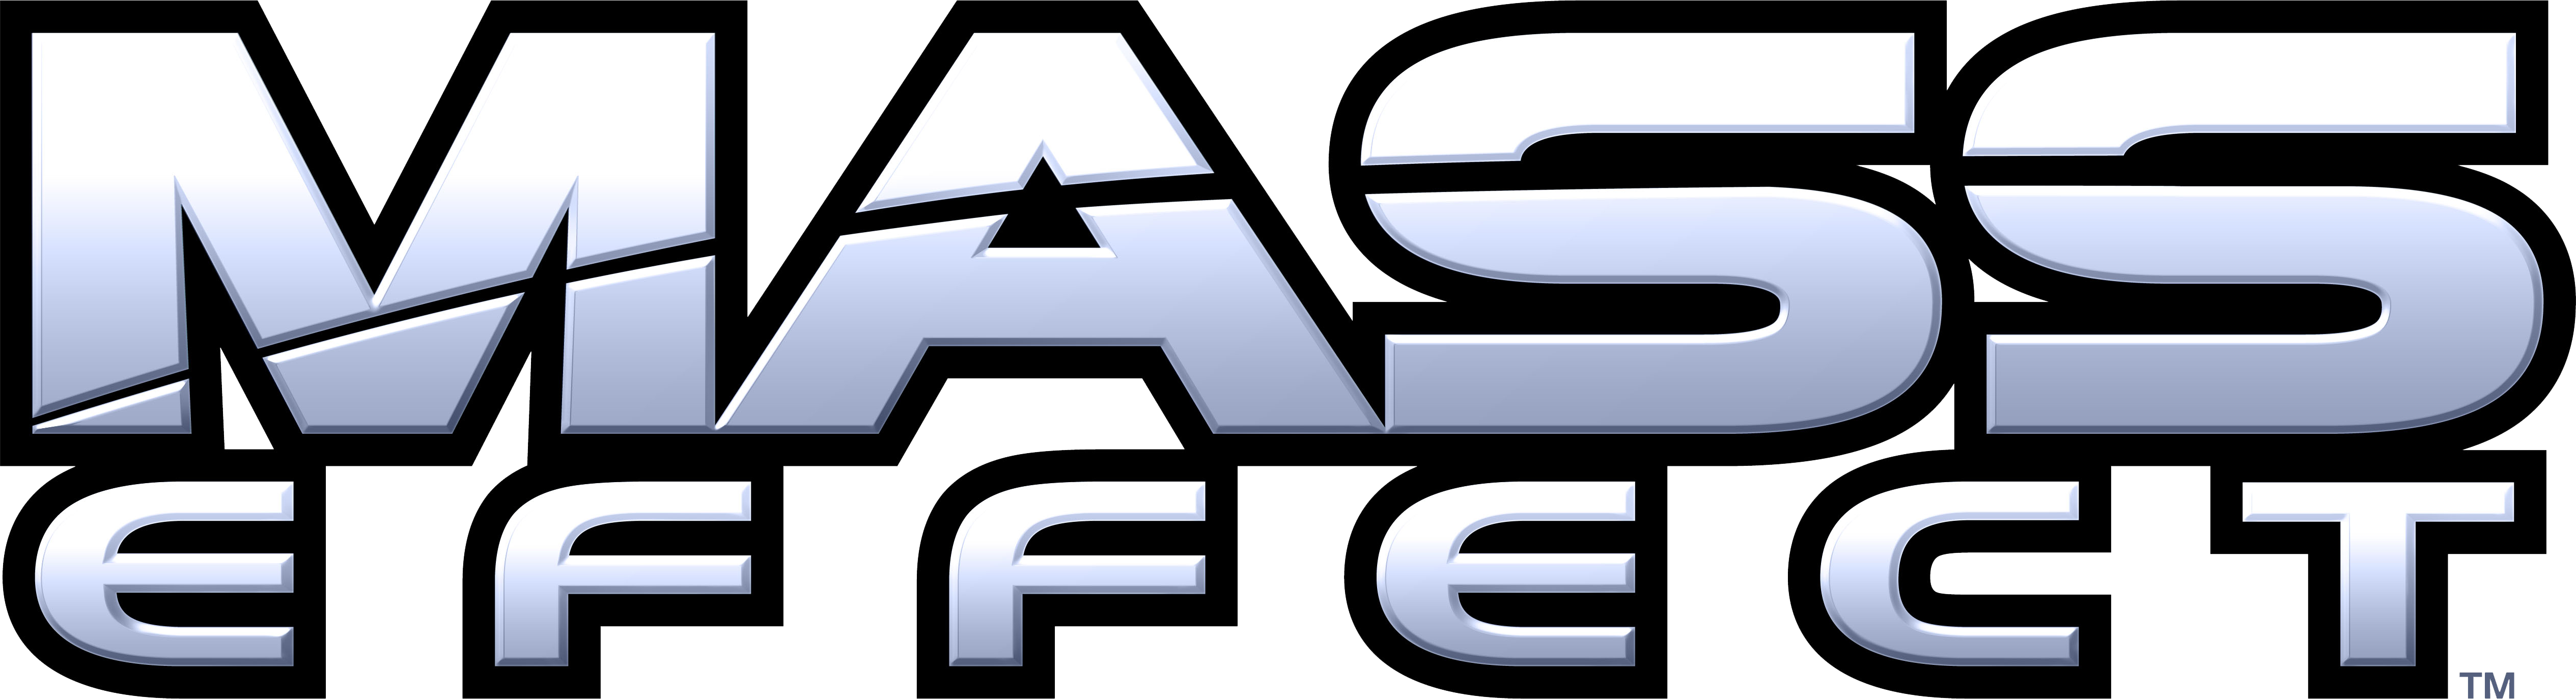 Mass Effect Logo.png